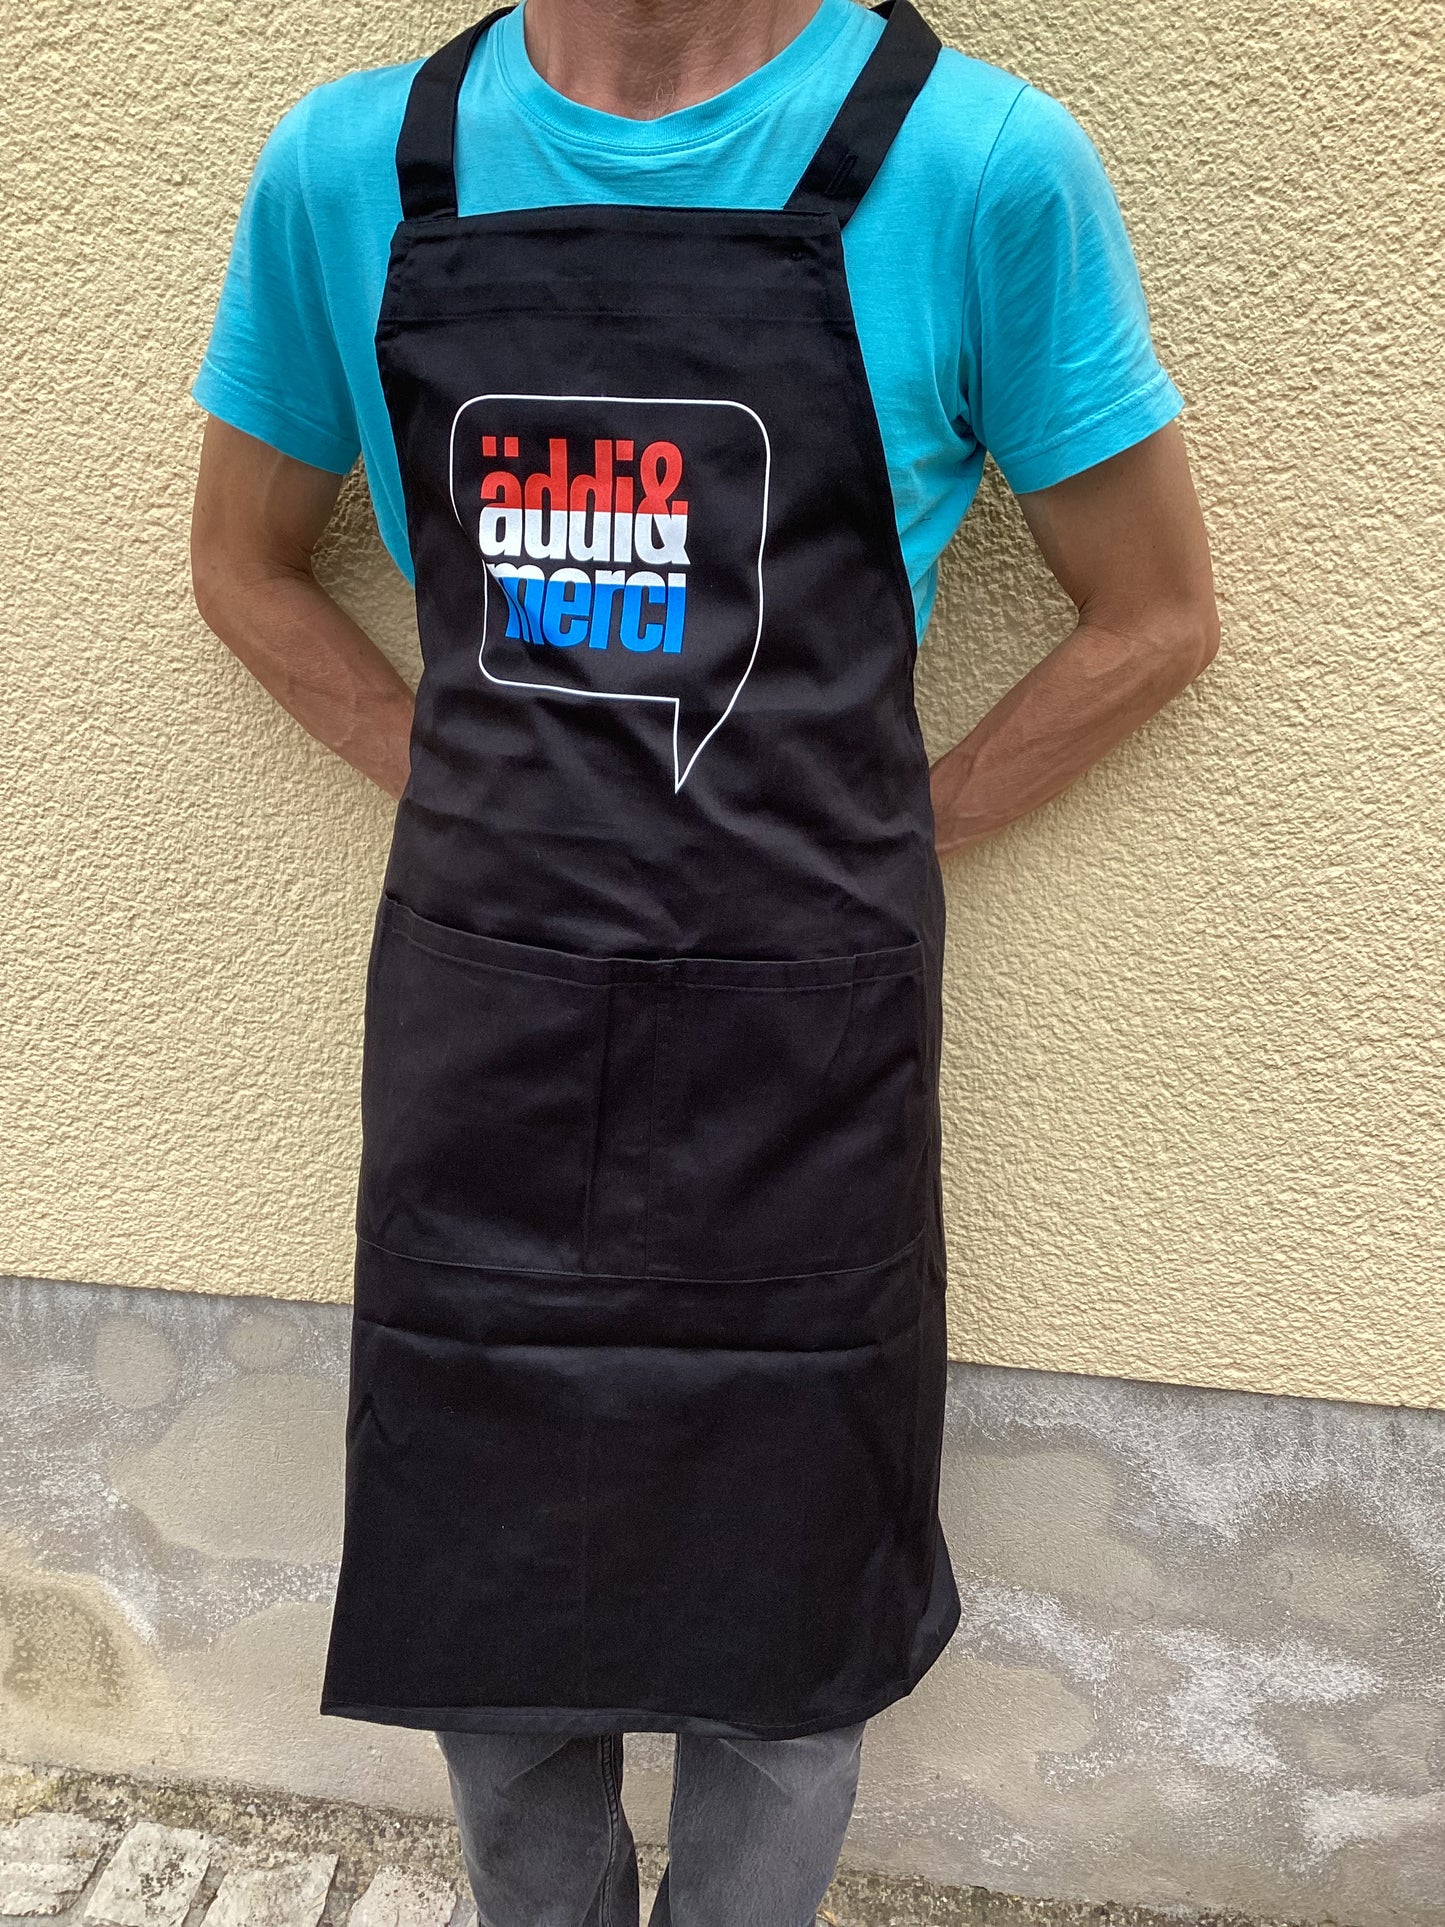 äddi&merci - Unisex Cooking apron